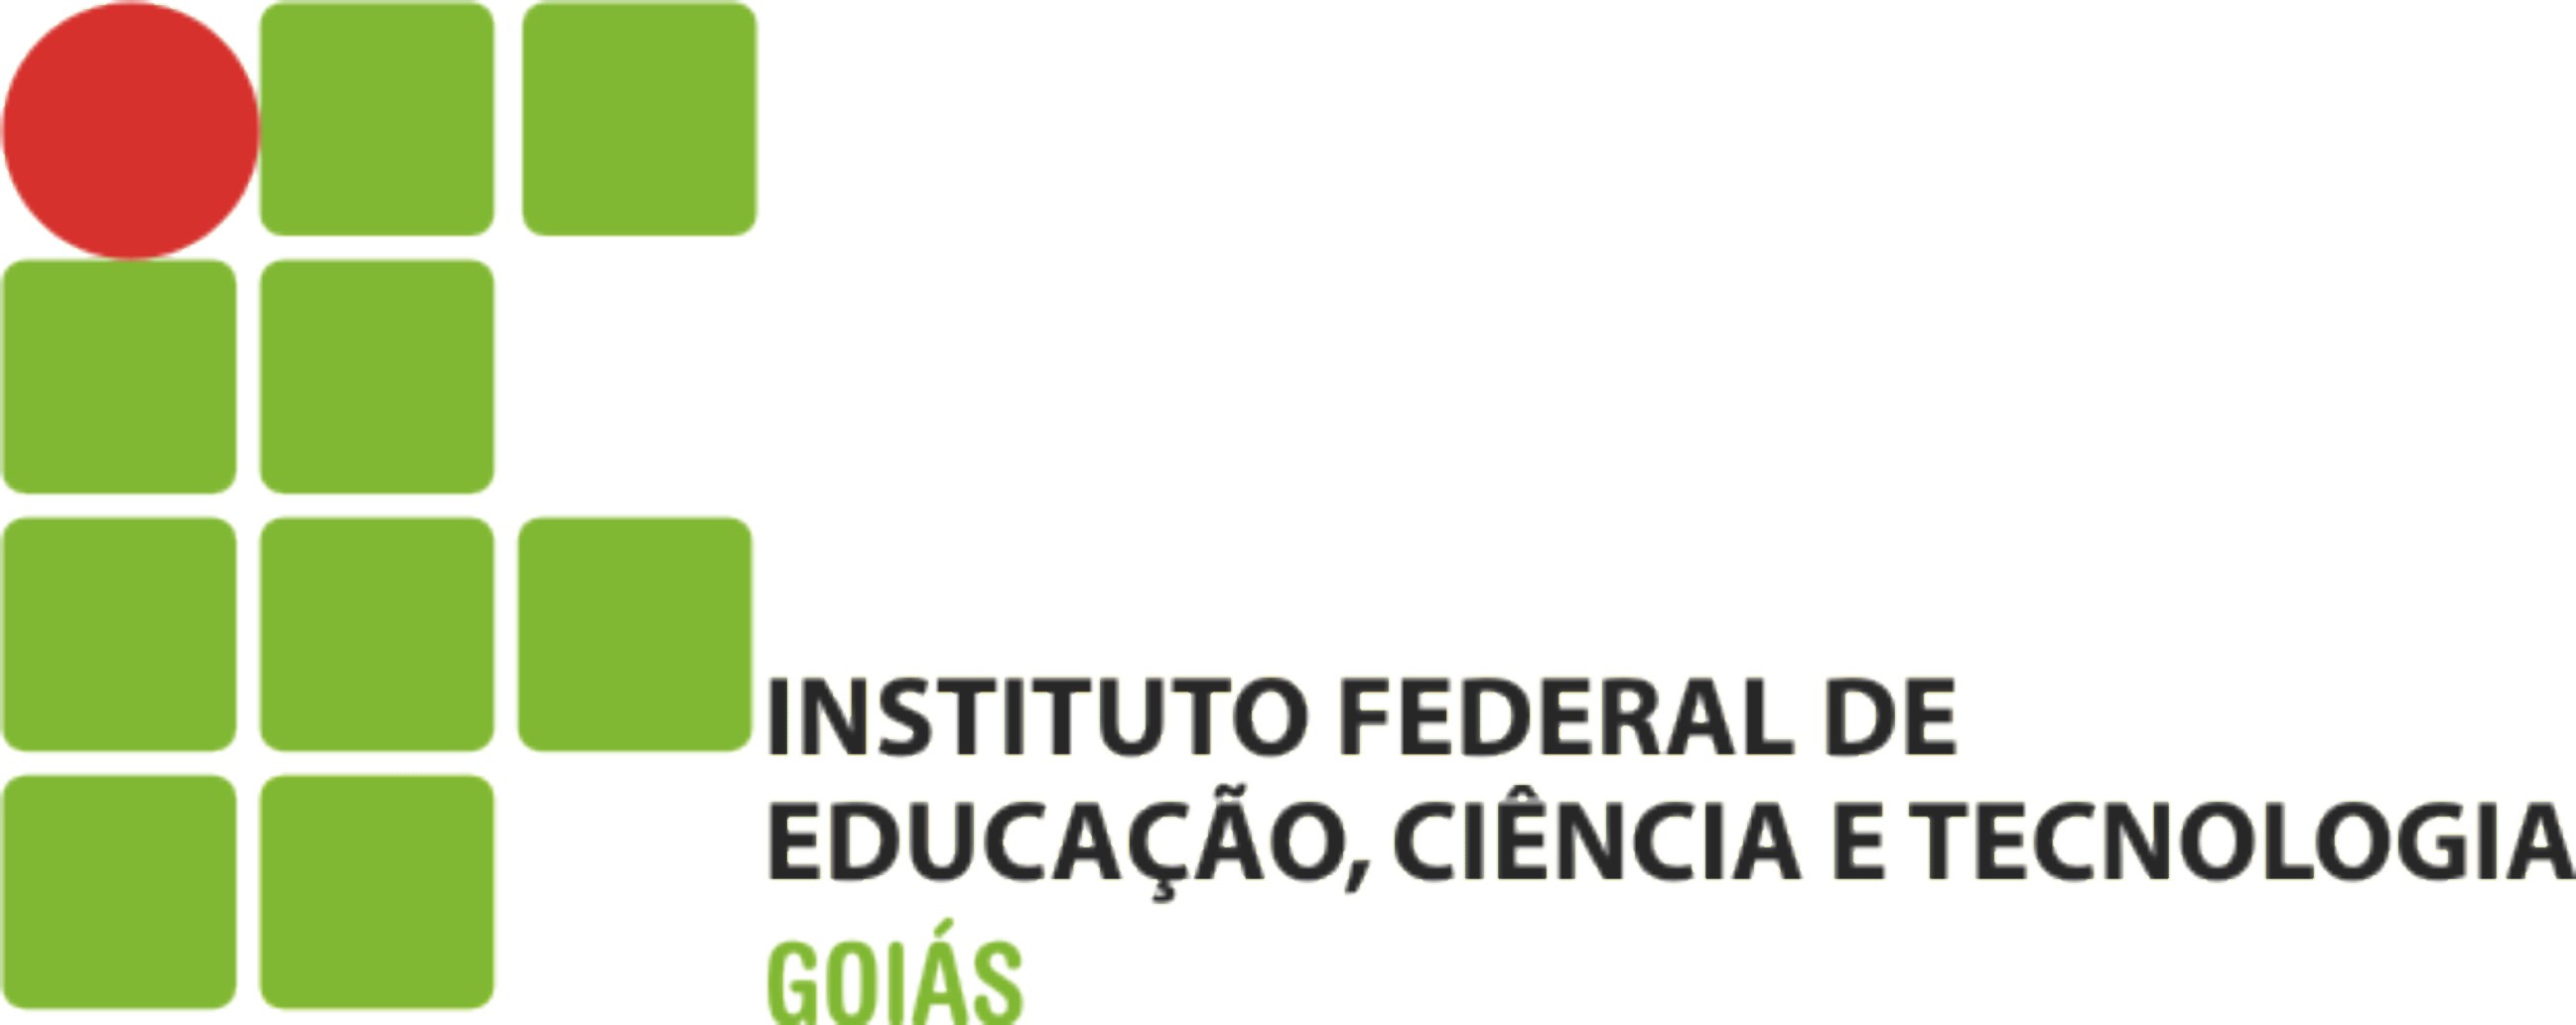 IFG abre inscrições para Vestibular 2020/1